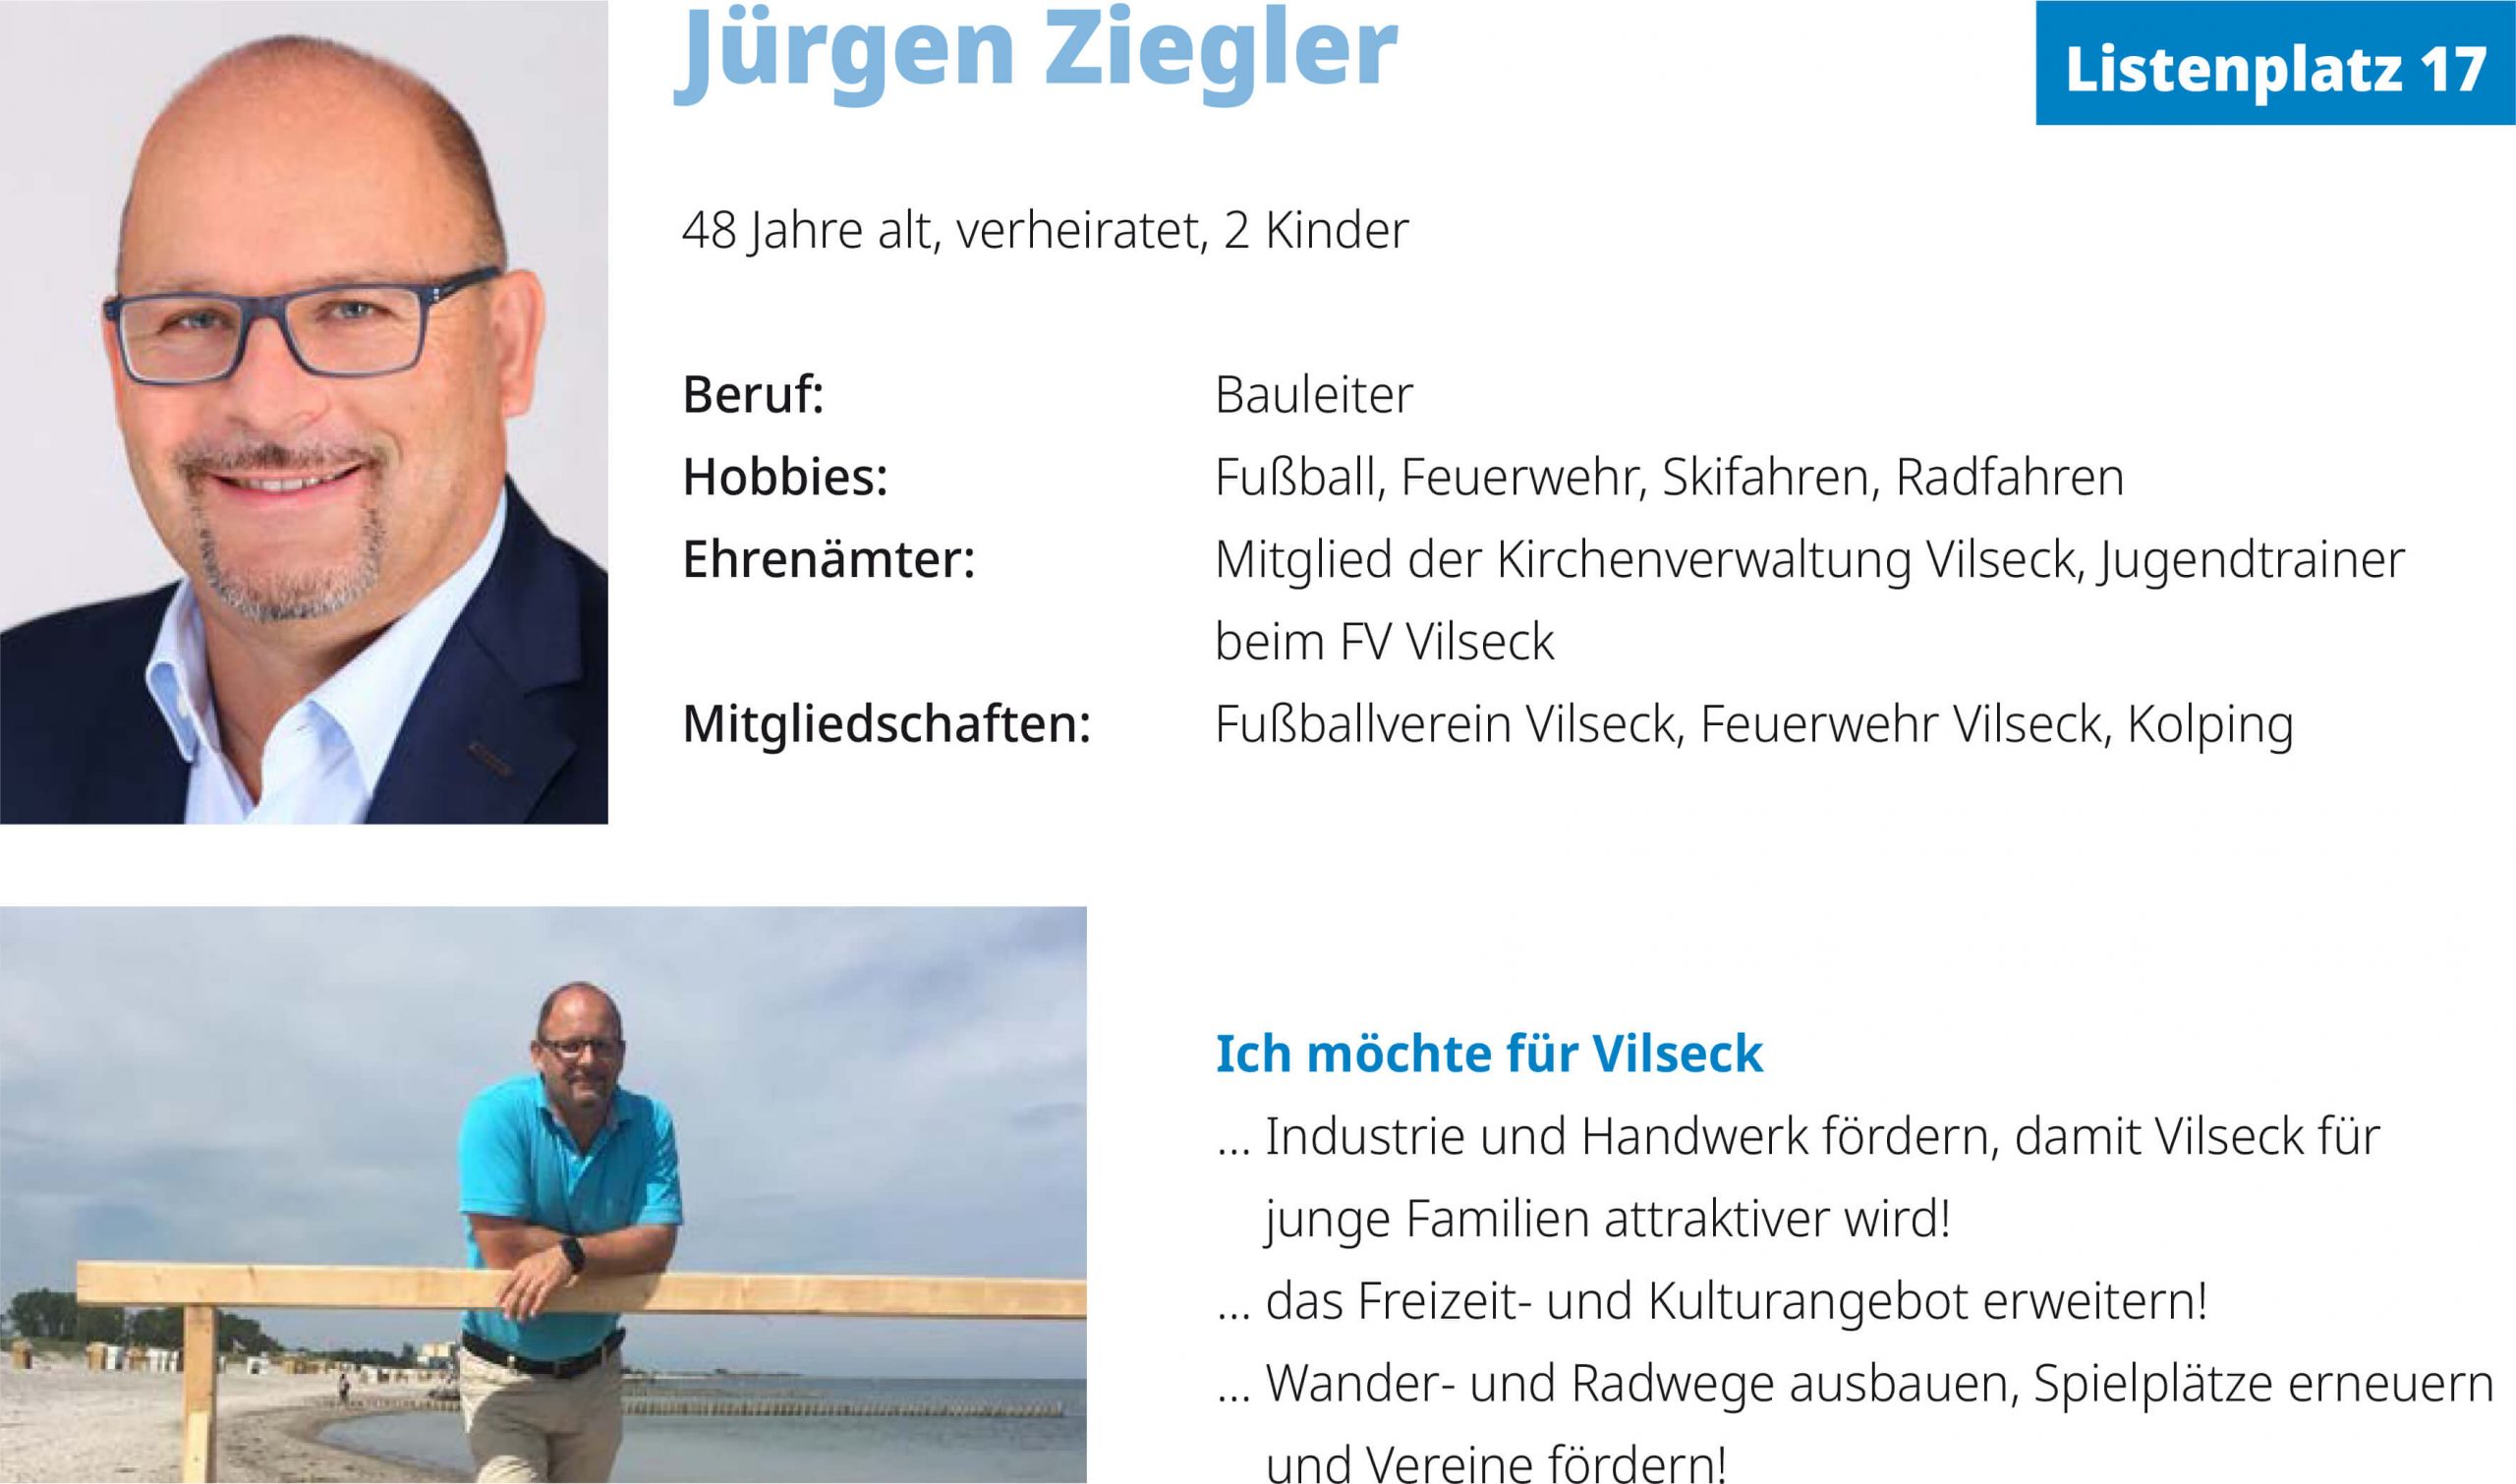 Jürgen Ziegler